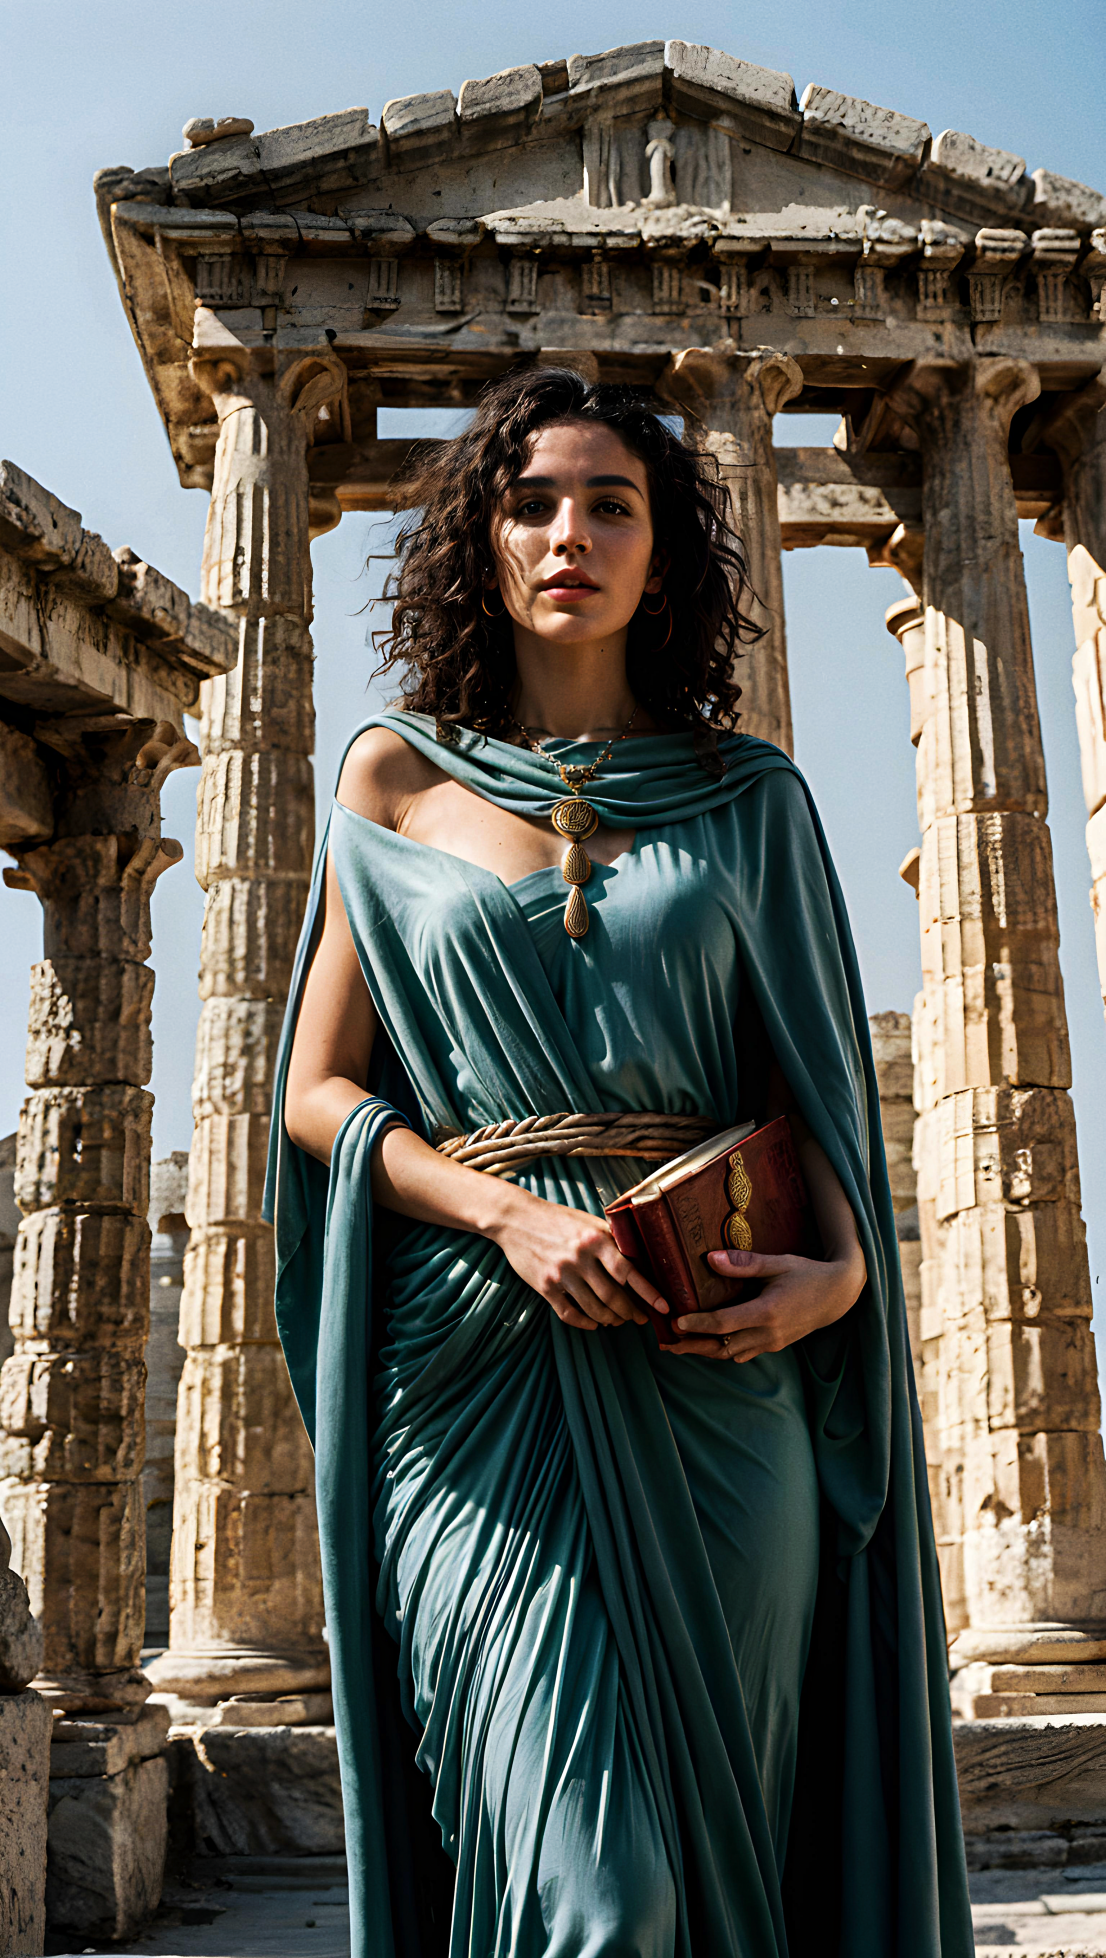 Athena by GreekMythologyinAi on DeviantArt